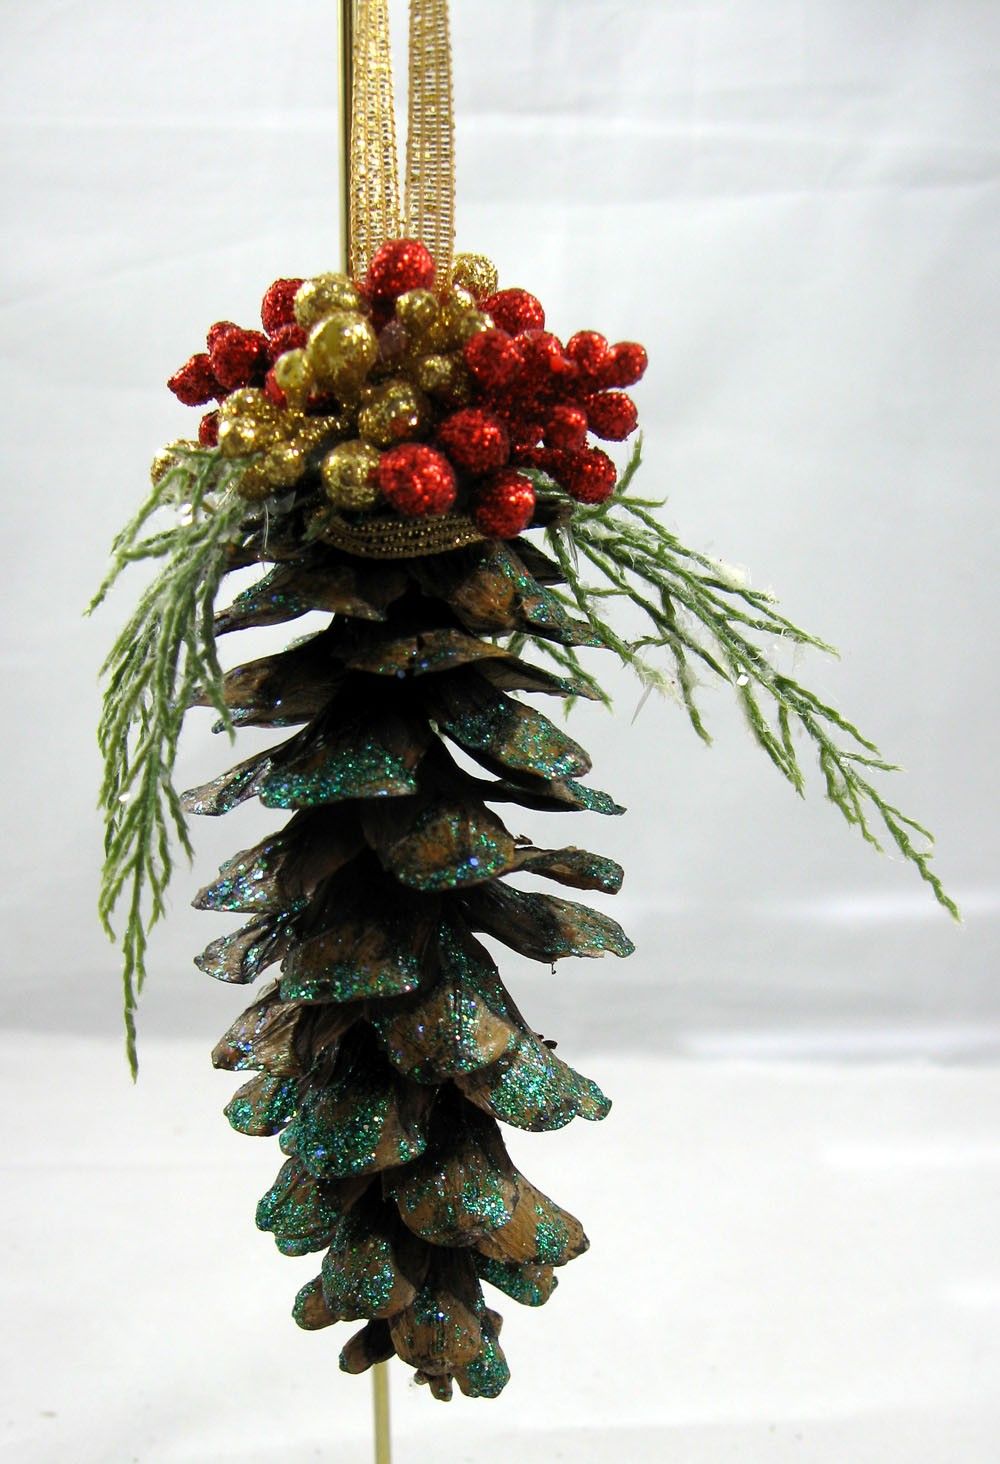 Pine Cone Christmas Ornament -   Pine Cone Christmas Ornament Ideas